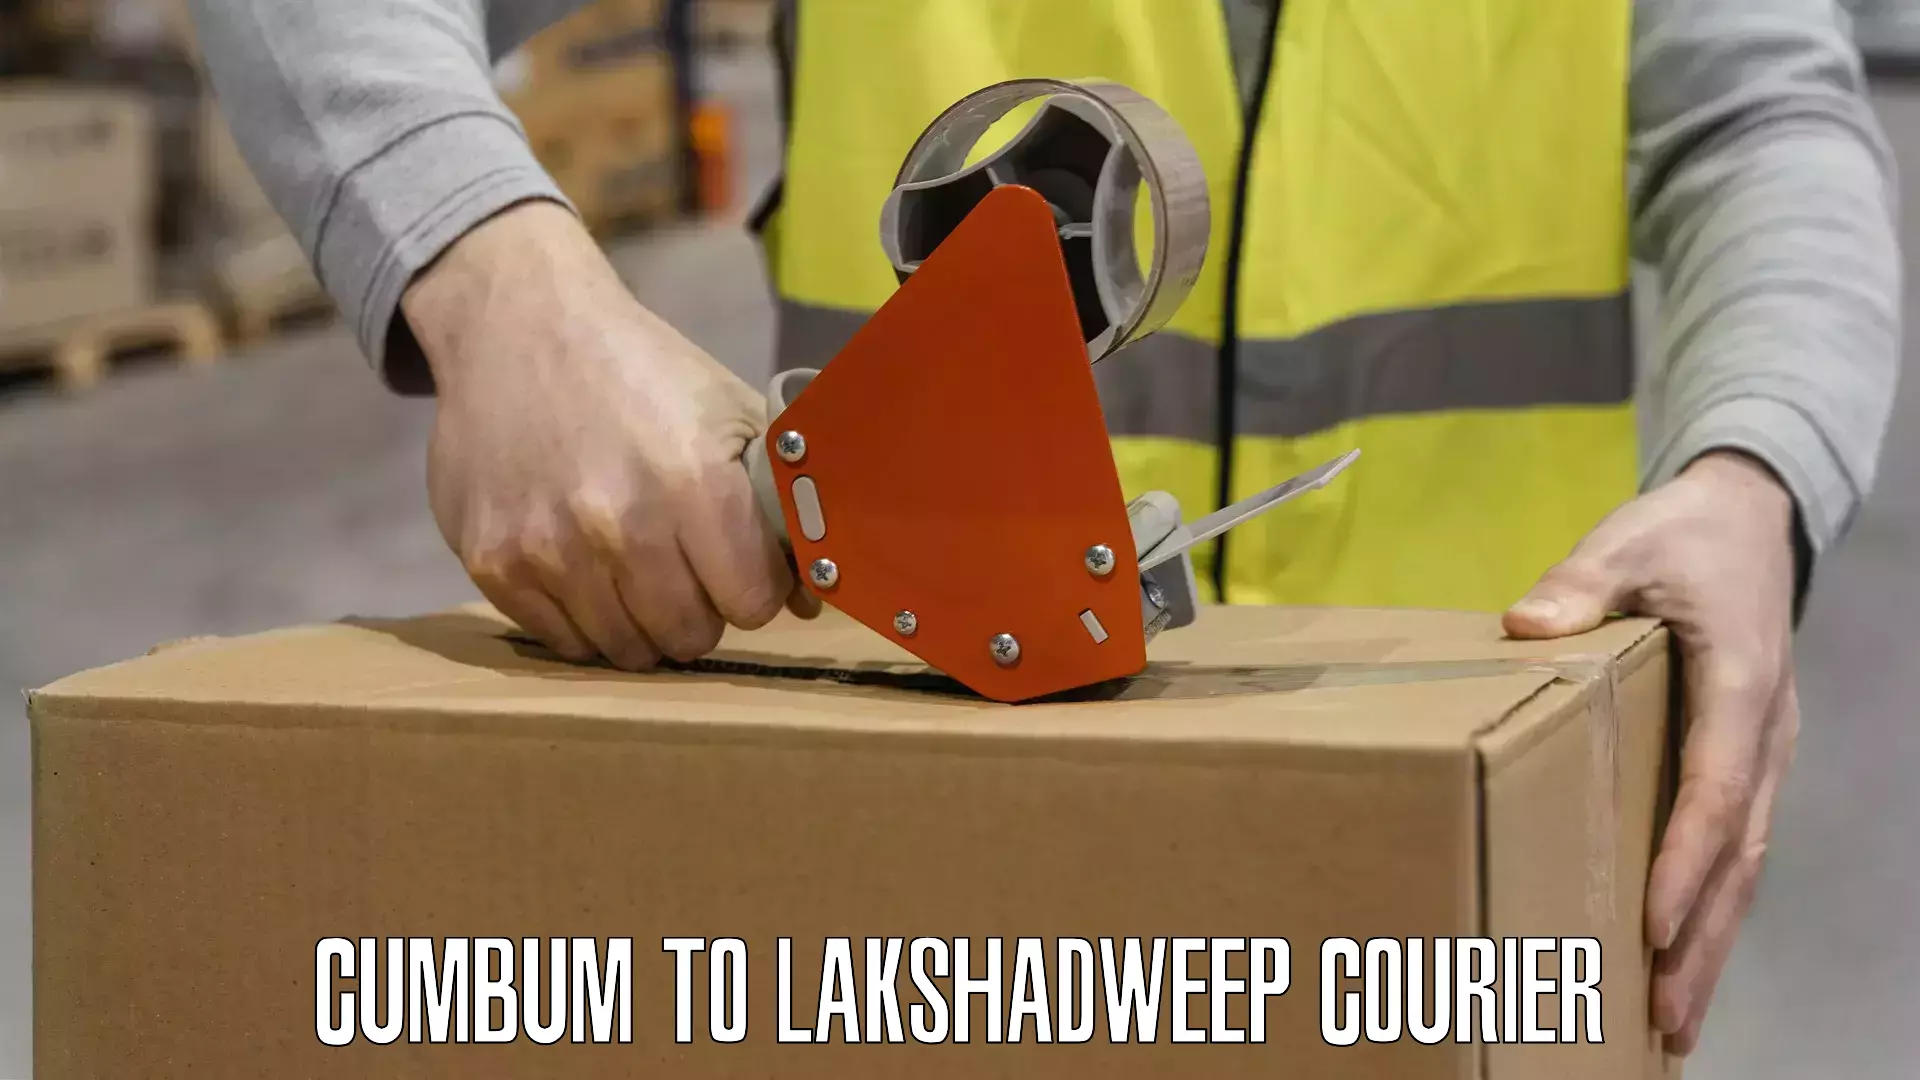 Premium courier solutions Cumbum to Lakshadweep